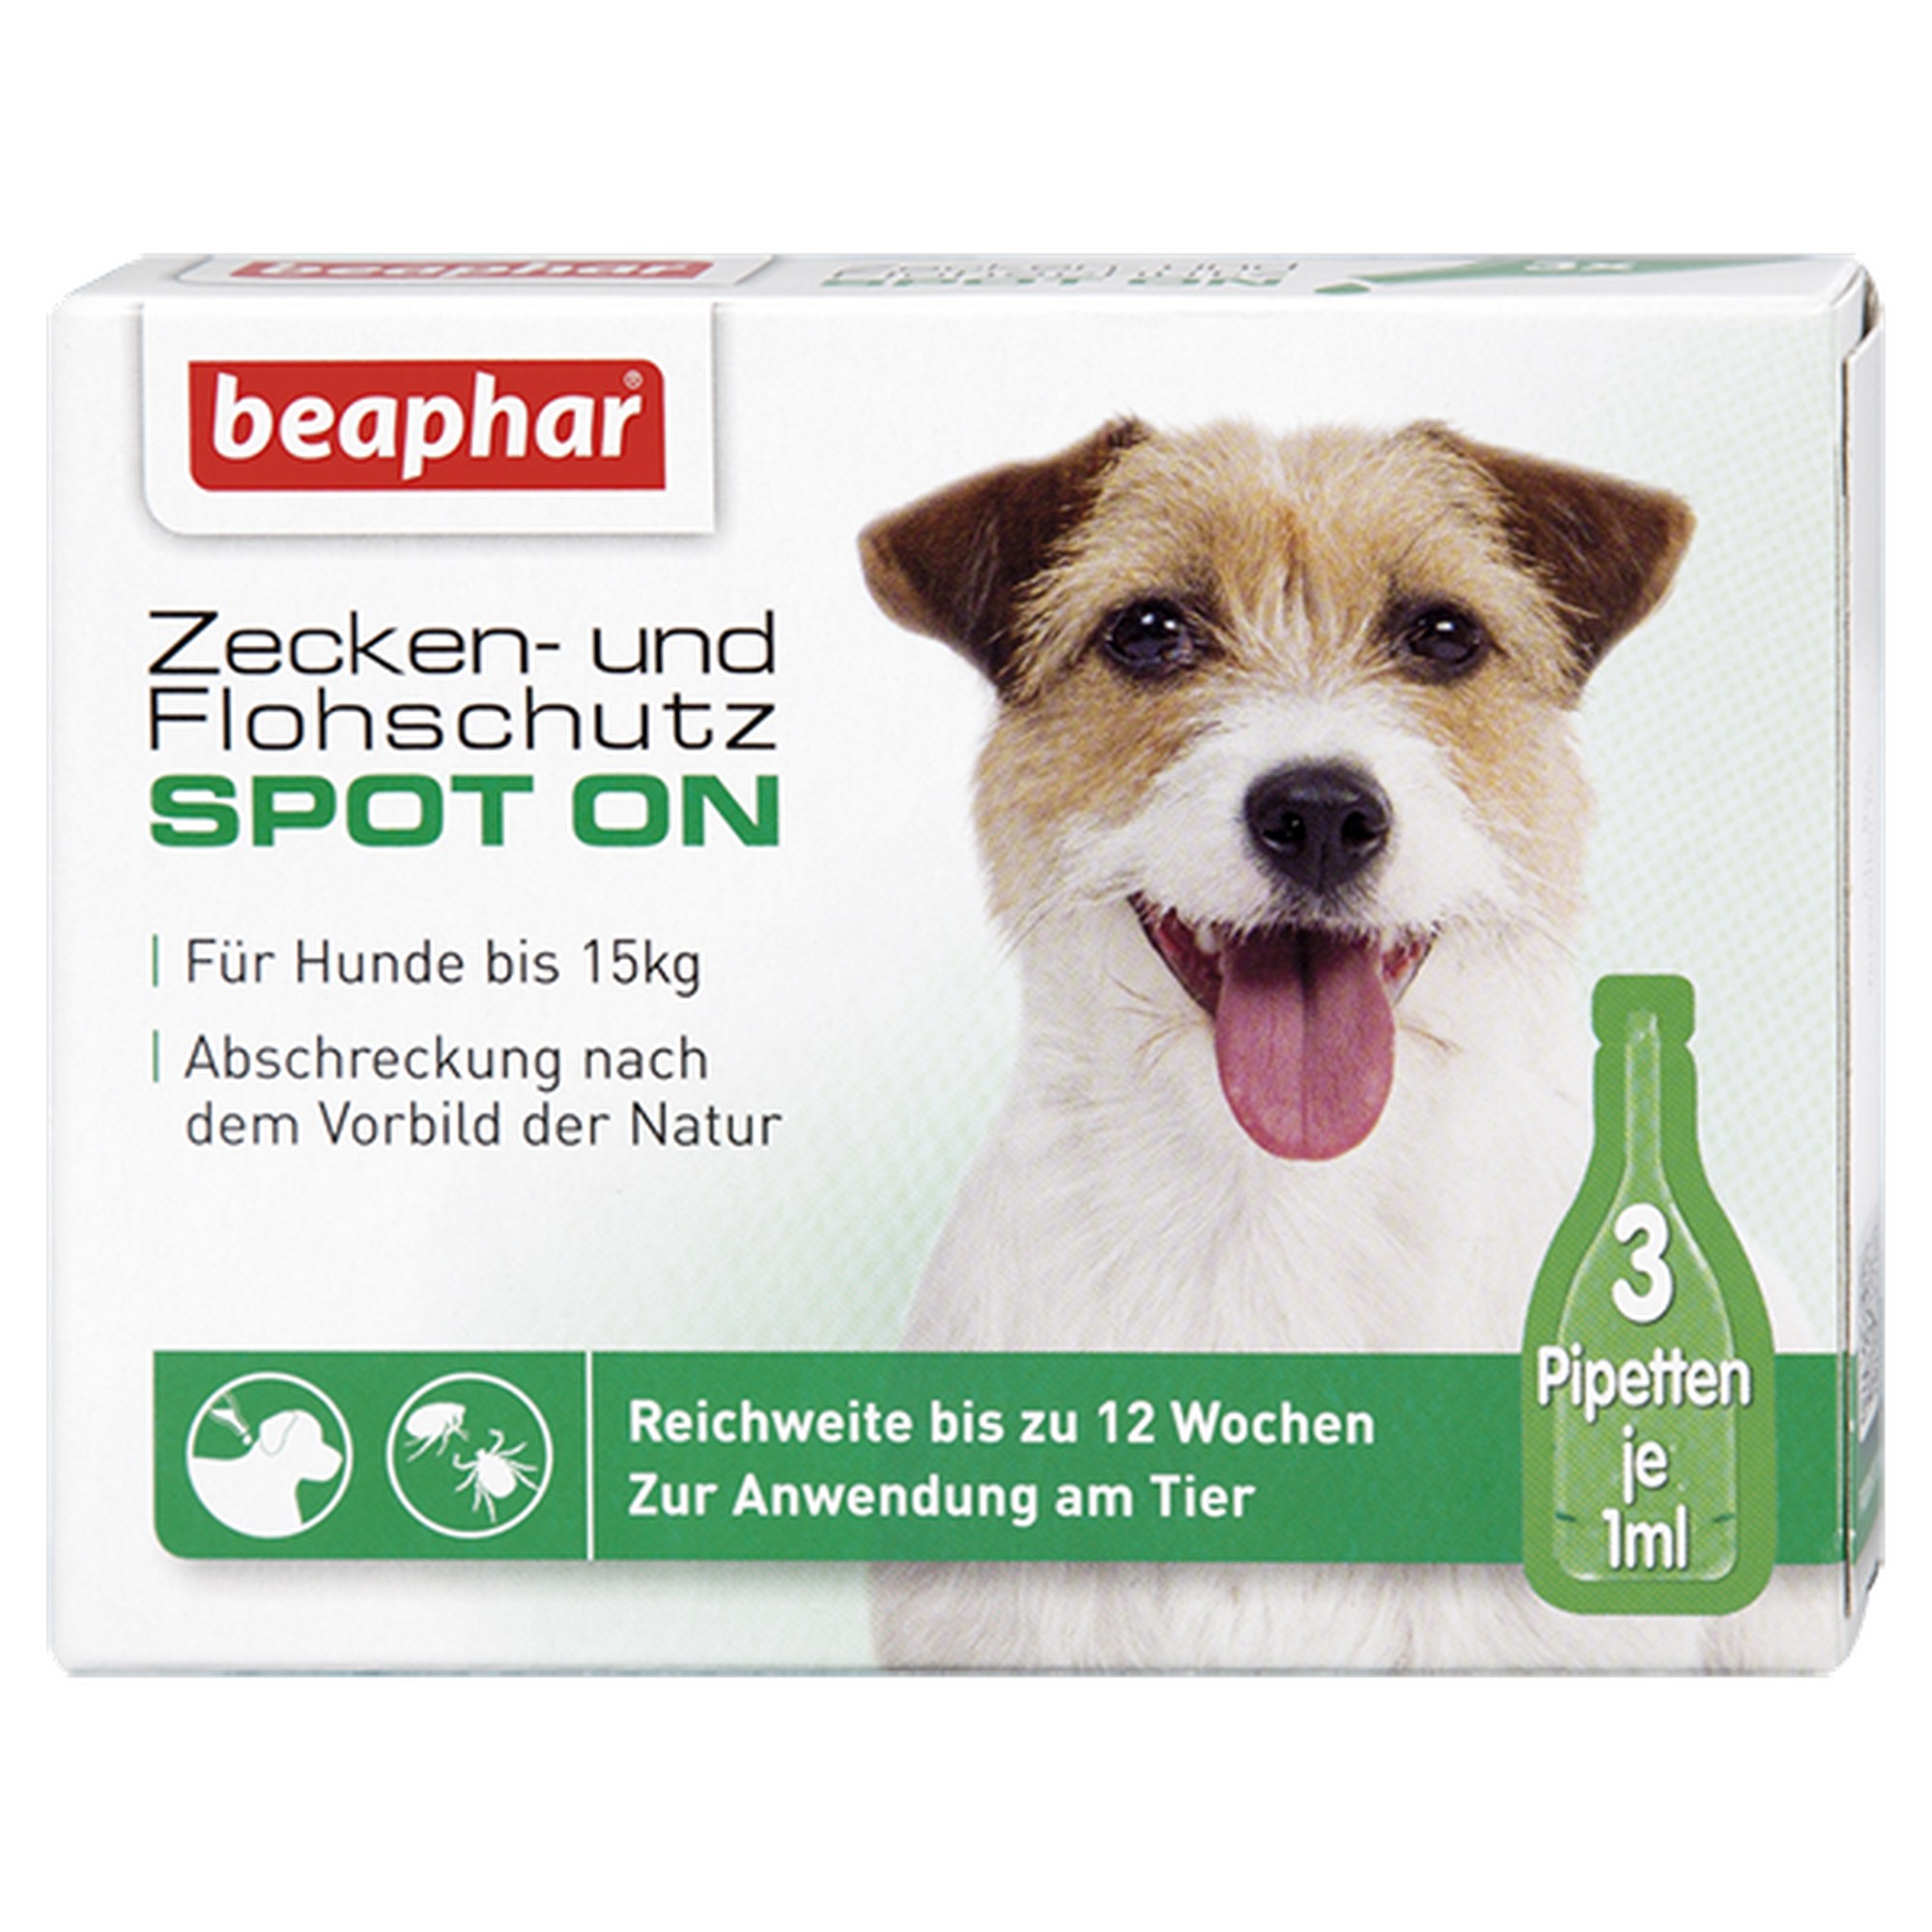 Zecken- und Flohschutz Spot on für kleine Hunde 3 x 1 ml + product picture